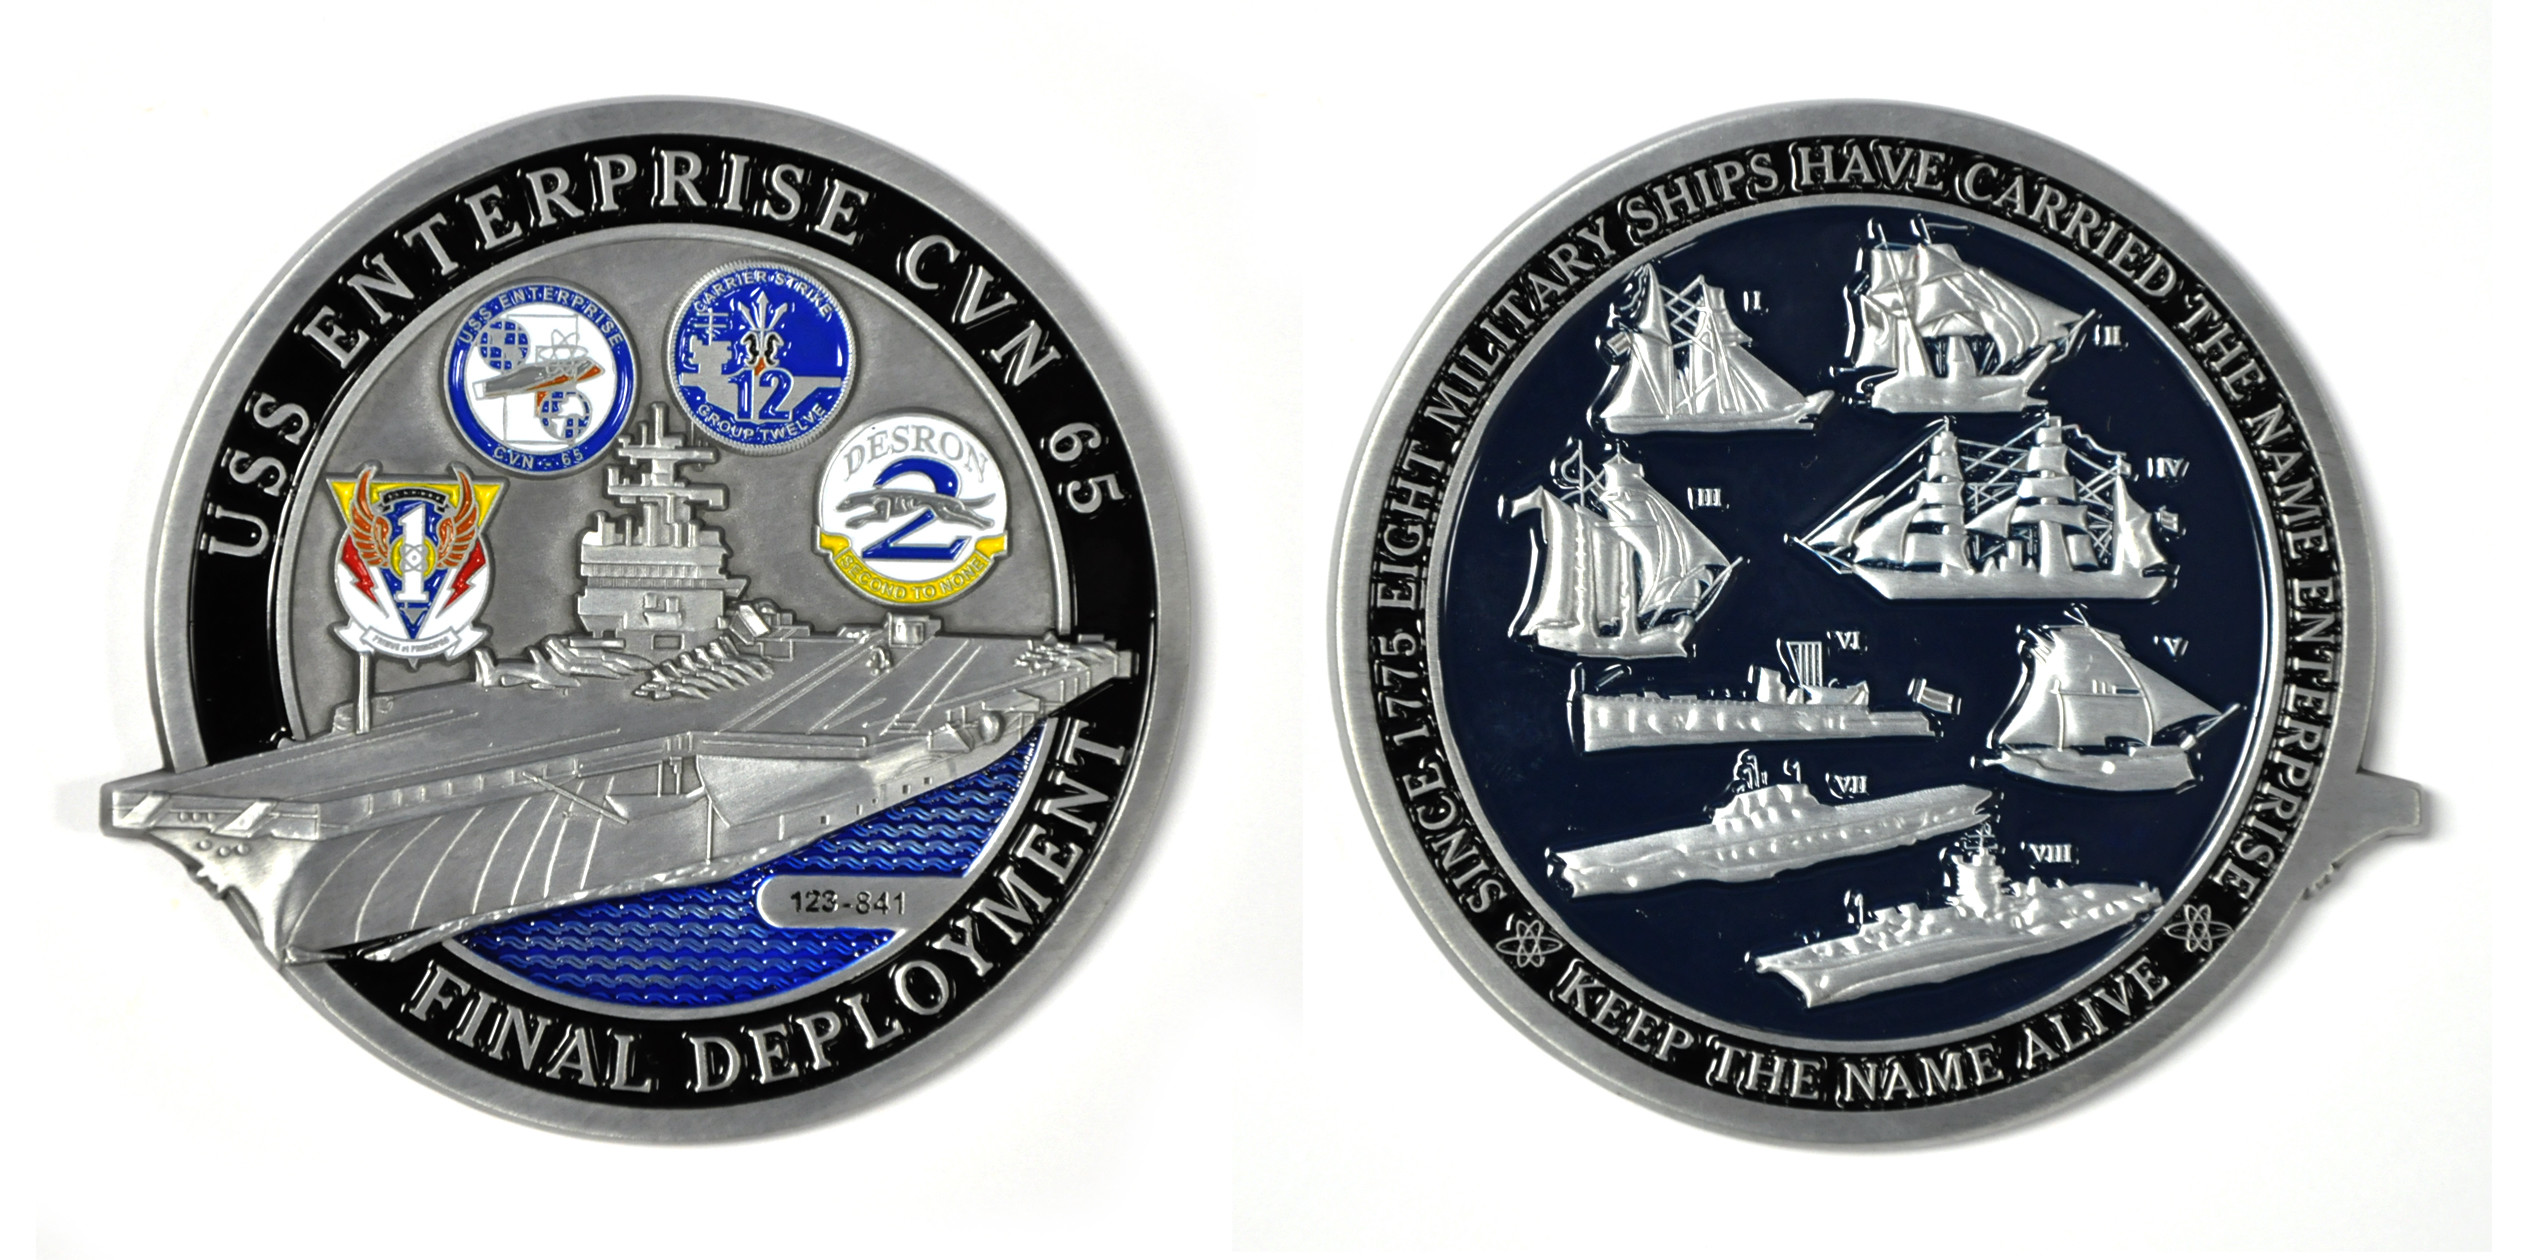 Custom Navy Coins for the “Big E”